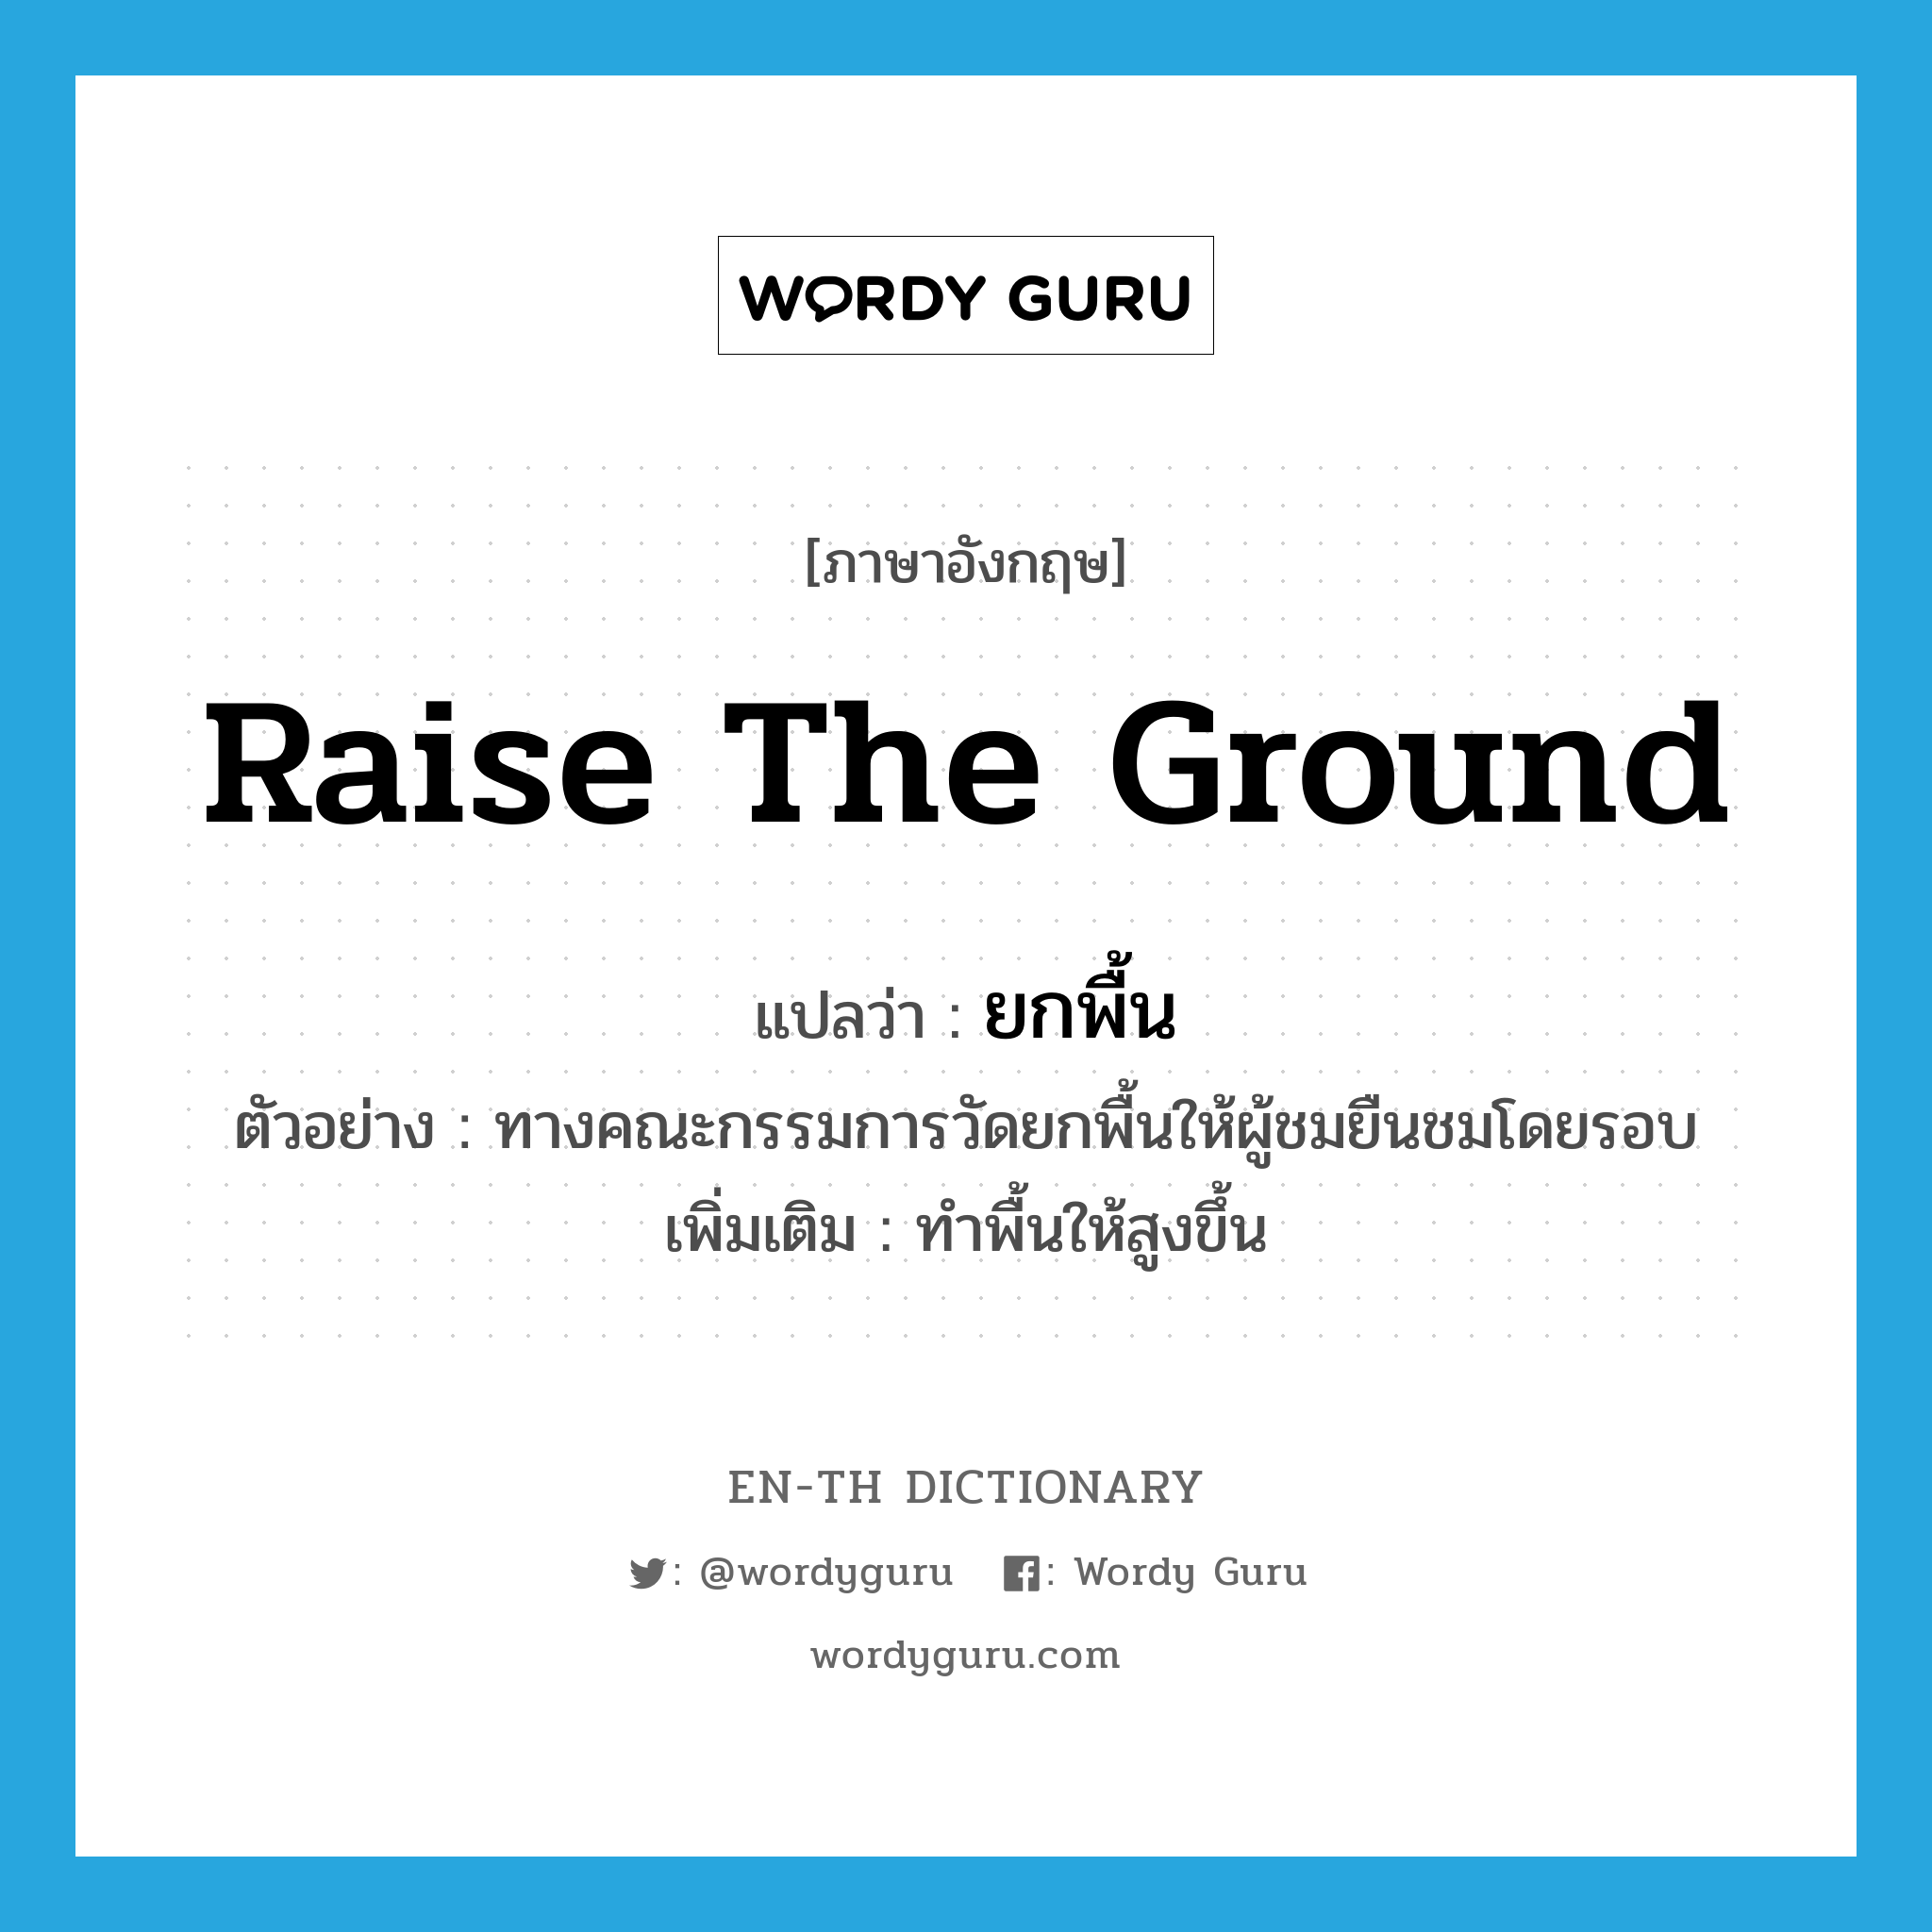 raise the ground แปลว่า?, คำศัพท์ภาษาอังกฤษ raise the ground แปลว่า ยกพื้น ประเภท V ตัวอย่าง ทางคณะกรรมการวัดยกพื้นให้ผู้ชมยืนชมโดยรอบ เพิ่มเติม ทำพื้นให้สูงขึ้น หมวด V